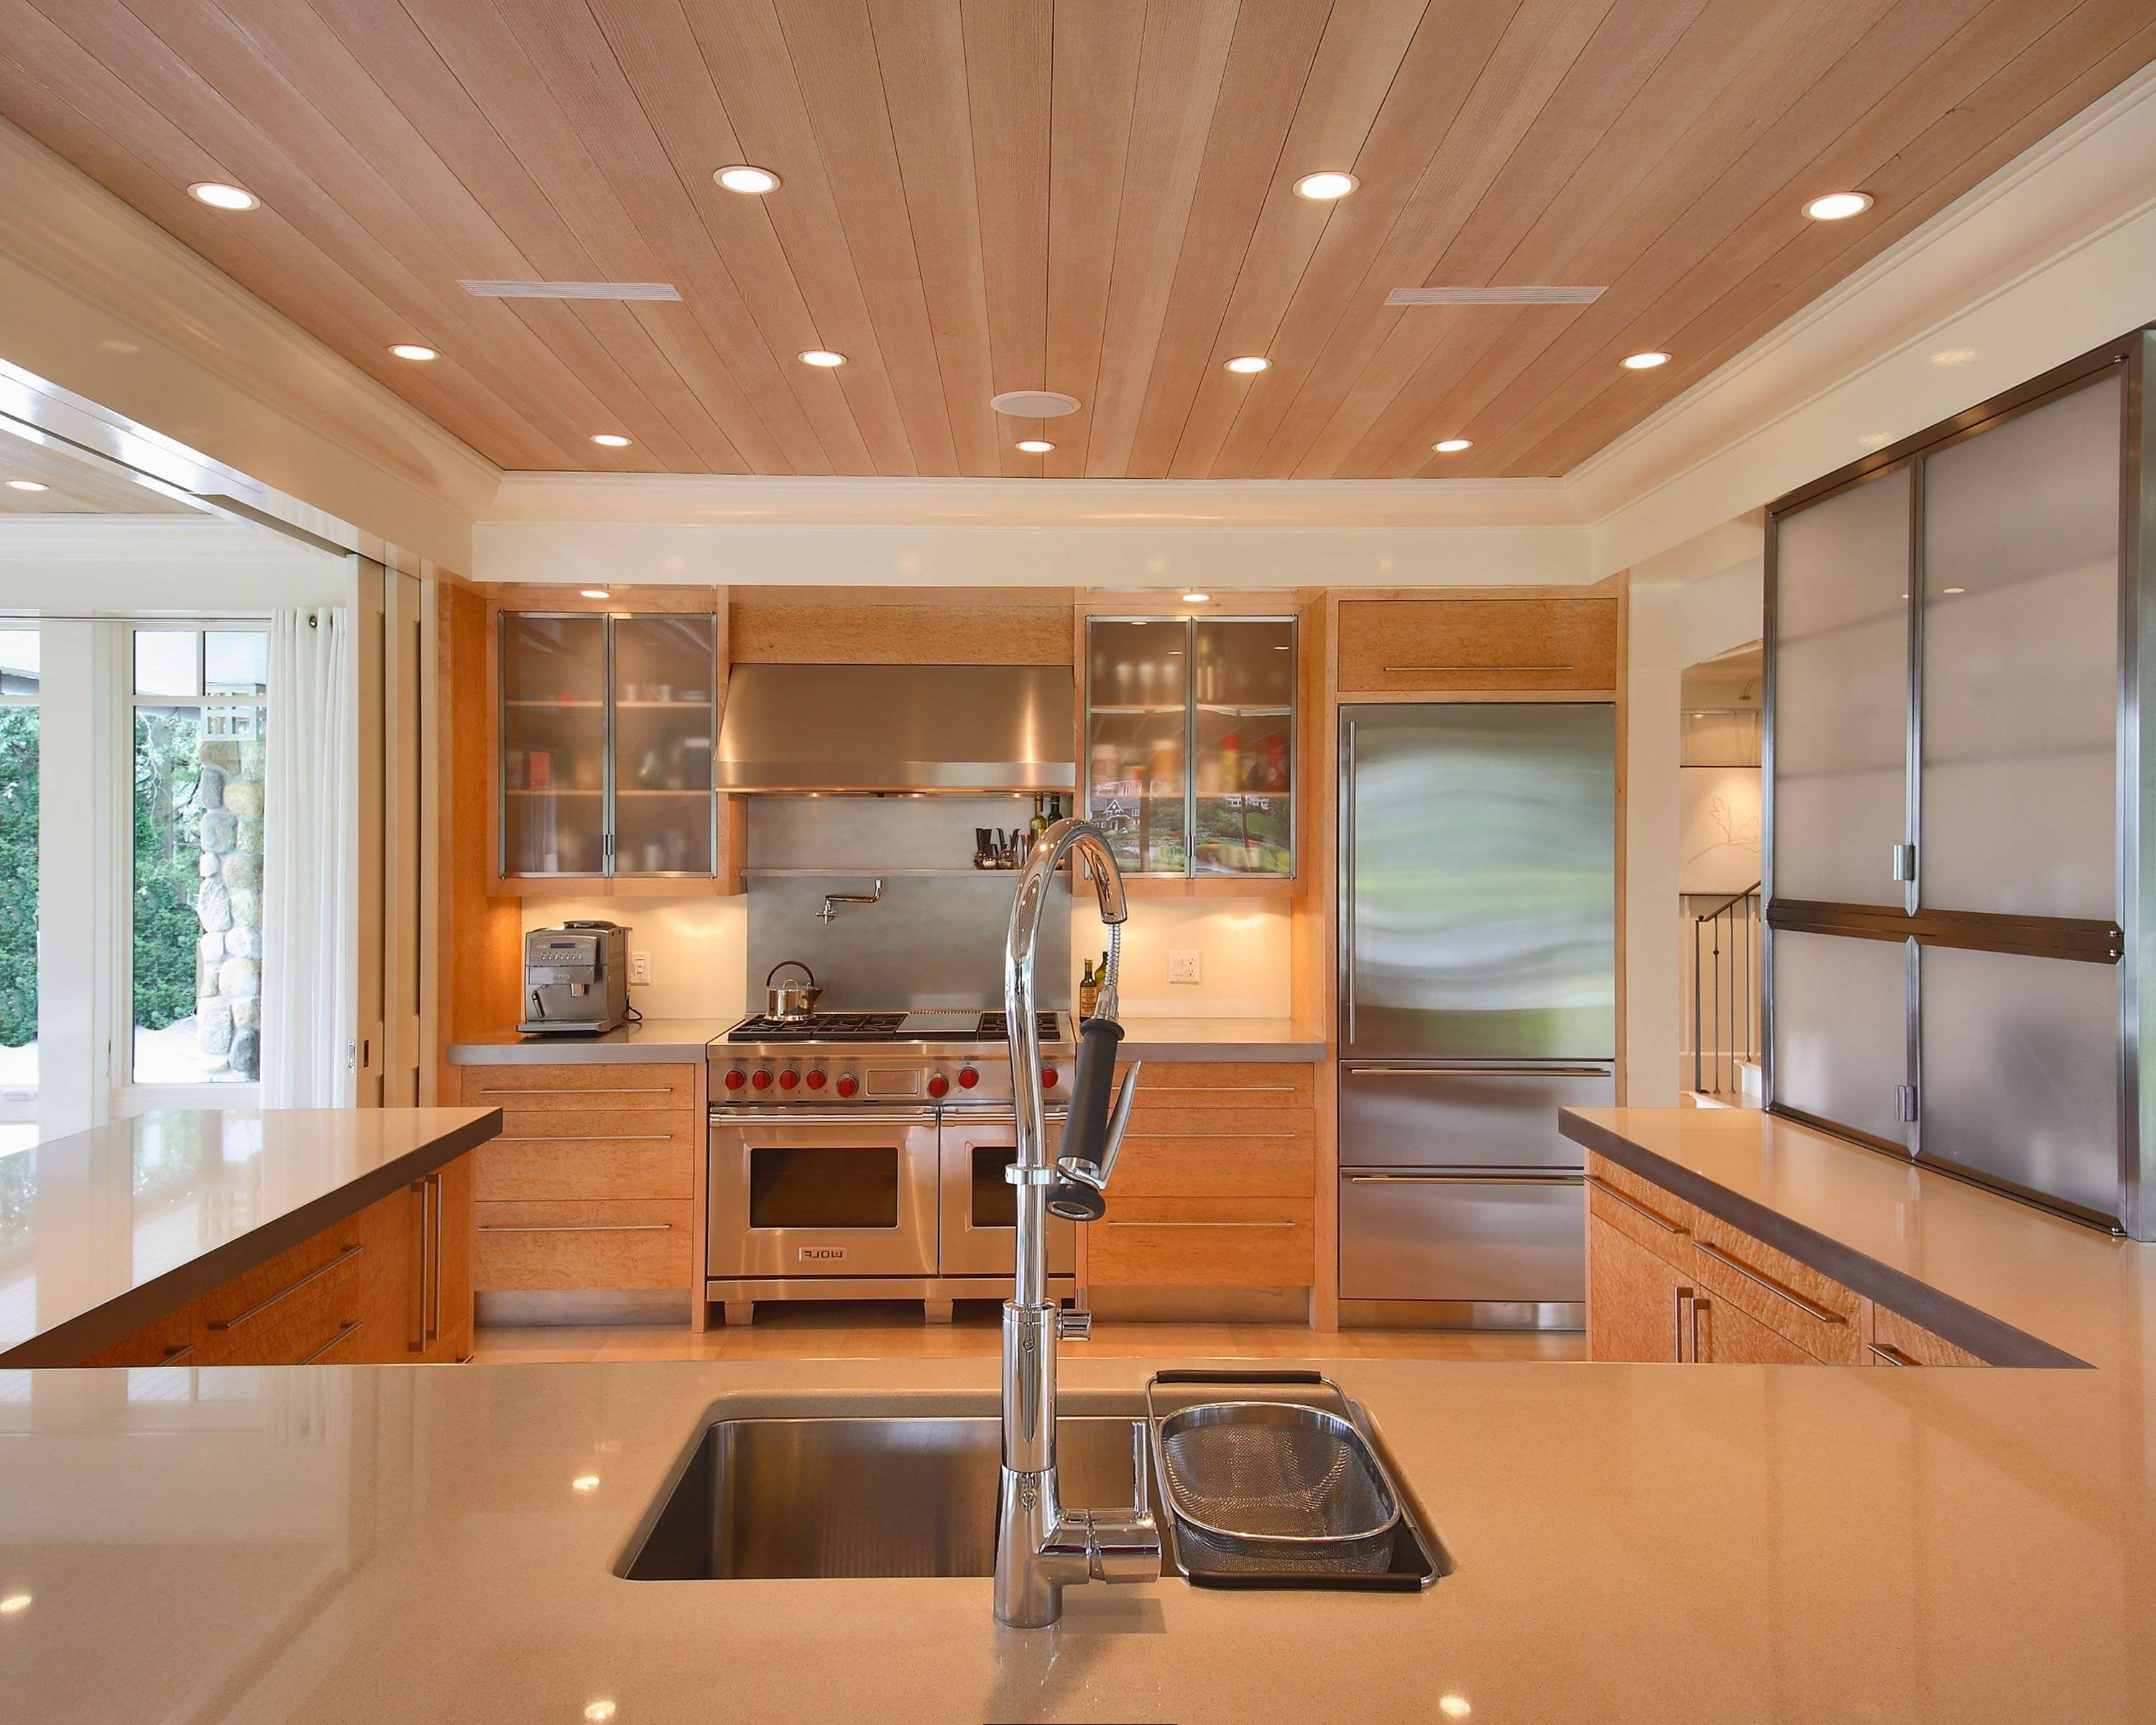 Потолок на кухне: варианты отделки эконом класса, какие выбрать обои, как лучше сделать кухонные потолочные покрытия